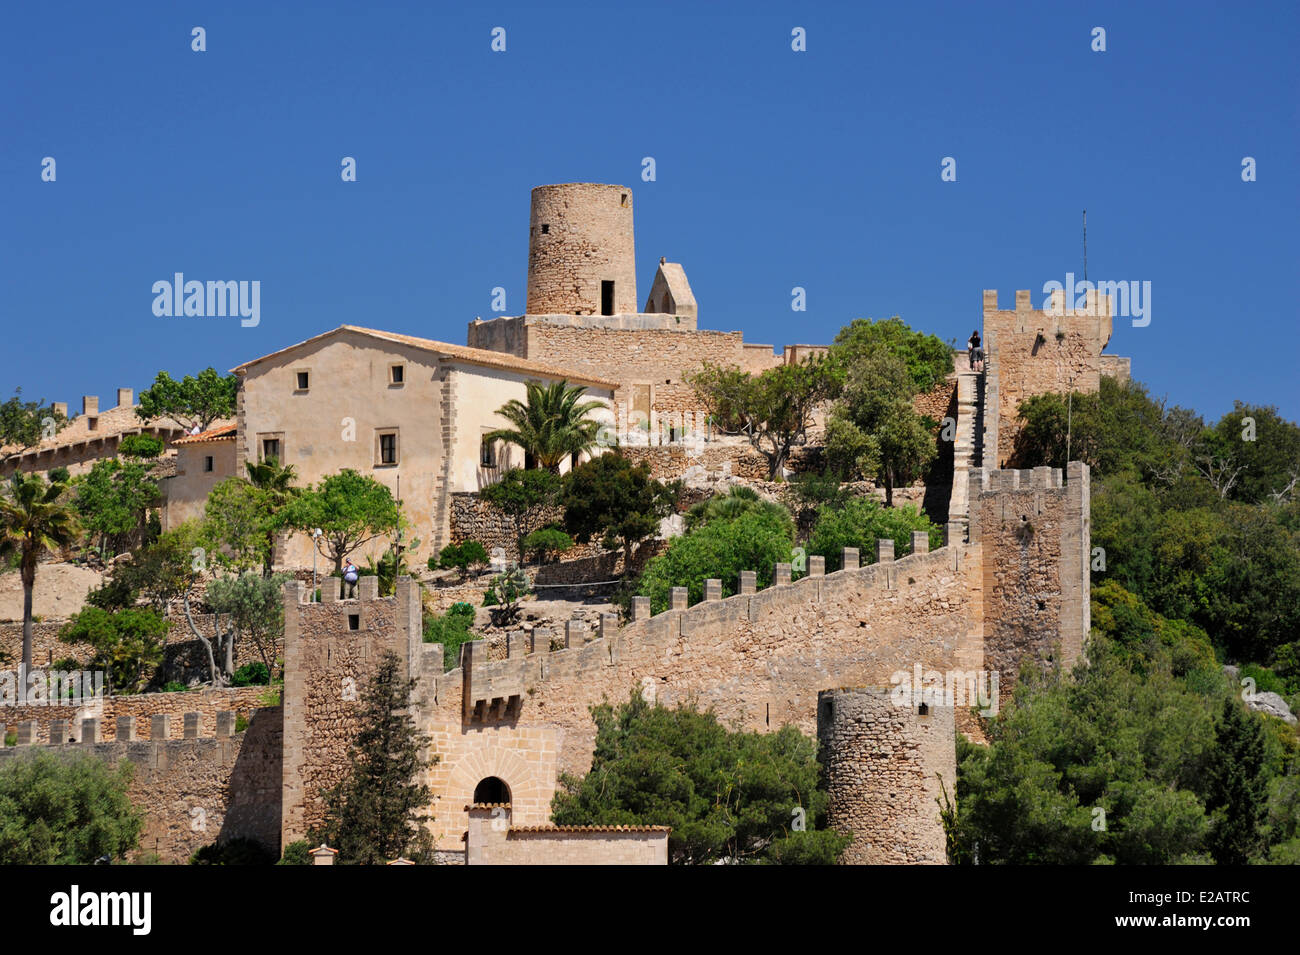 L'Espagne, Îles Baléares, Mallorca, Capdepera, château en haut de la colline Banque D'Images